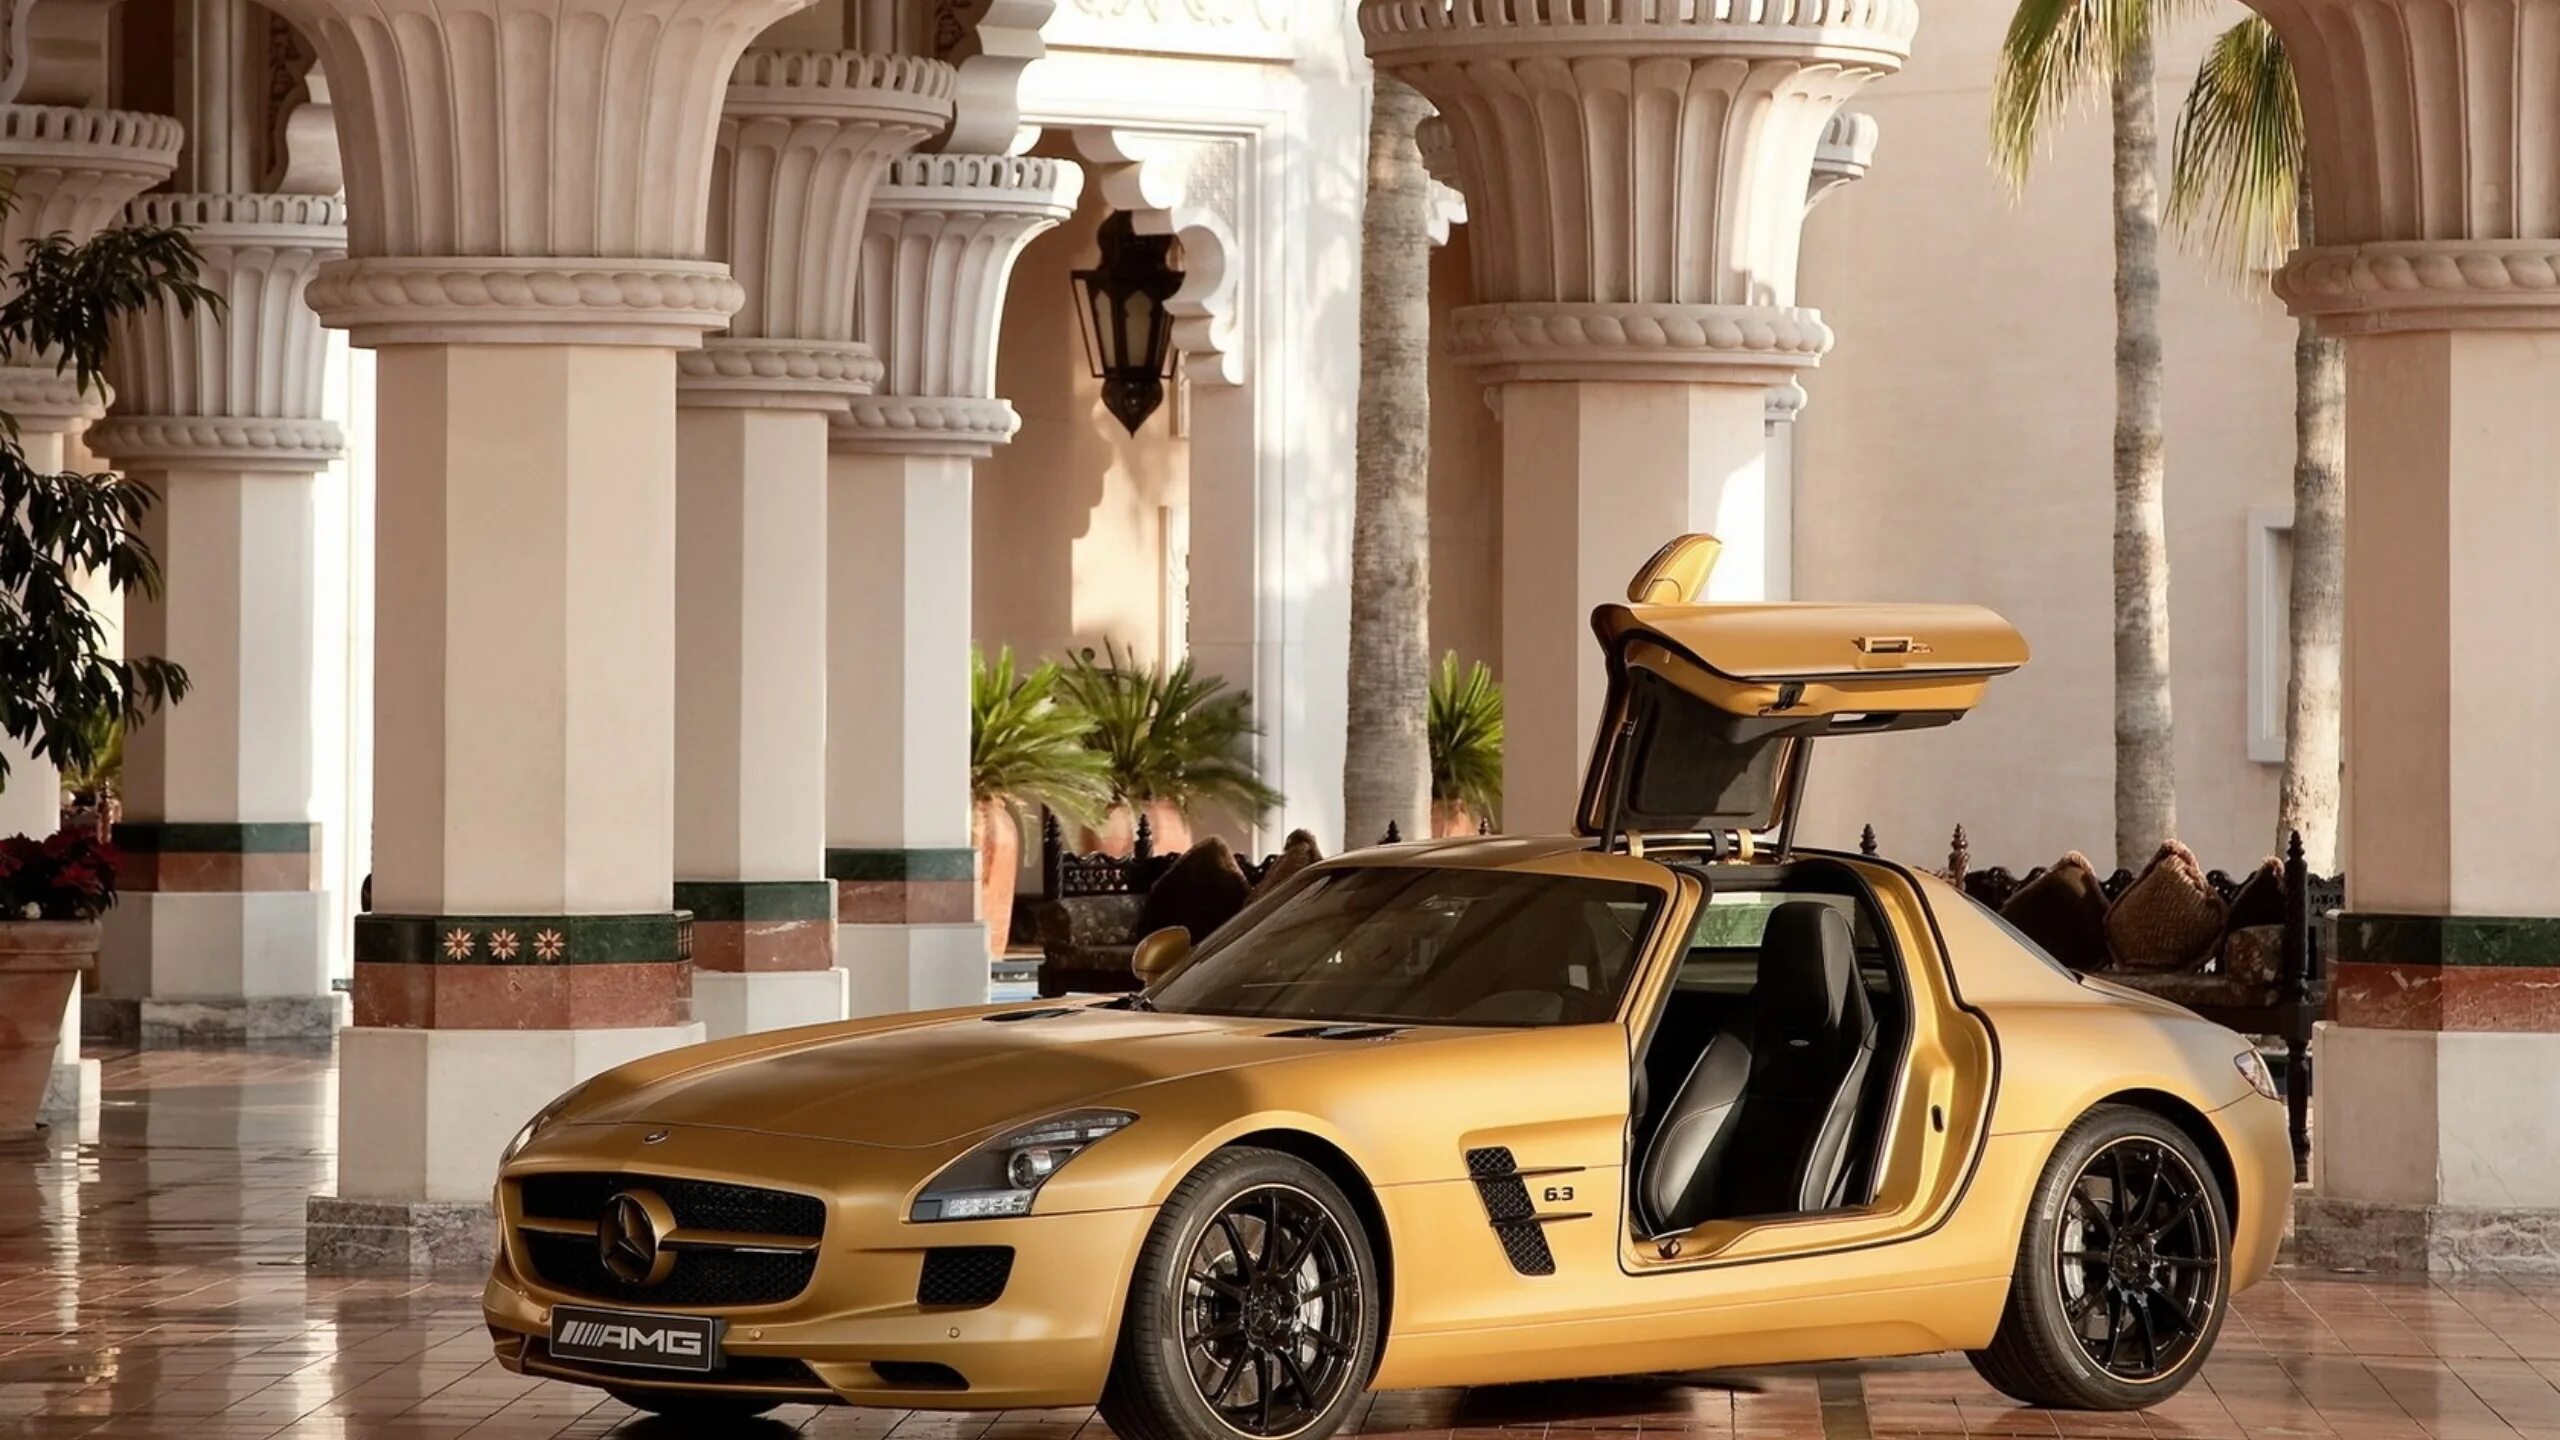 Включи мир машины. Мерседес СЛС АМГ золотой. Мерседес Бенц СЛС АМГ В Дубае. Mercedes AMG SLS Desert Gold. 2010 Mercedes Benz SLS AMG Desert.